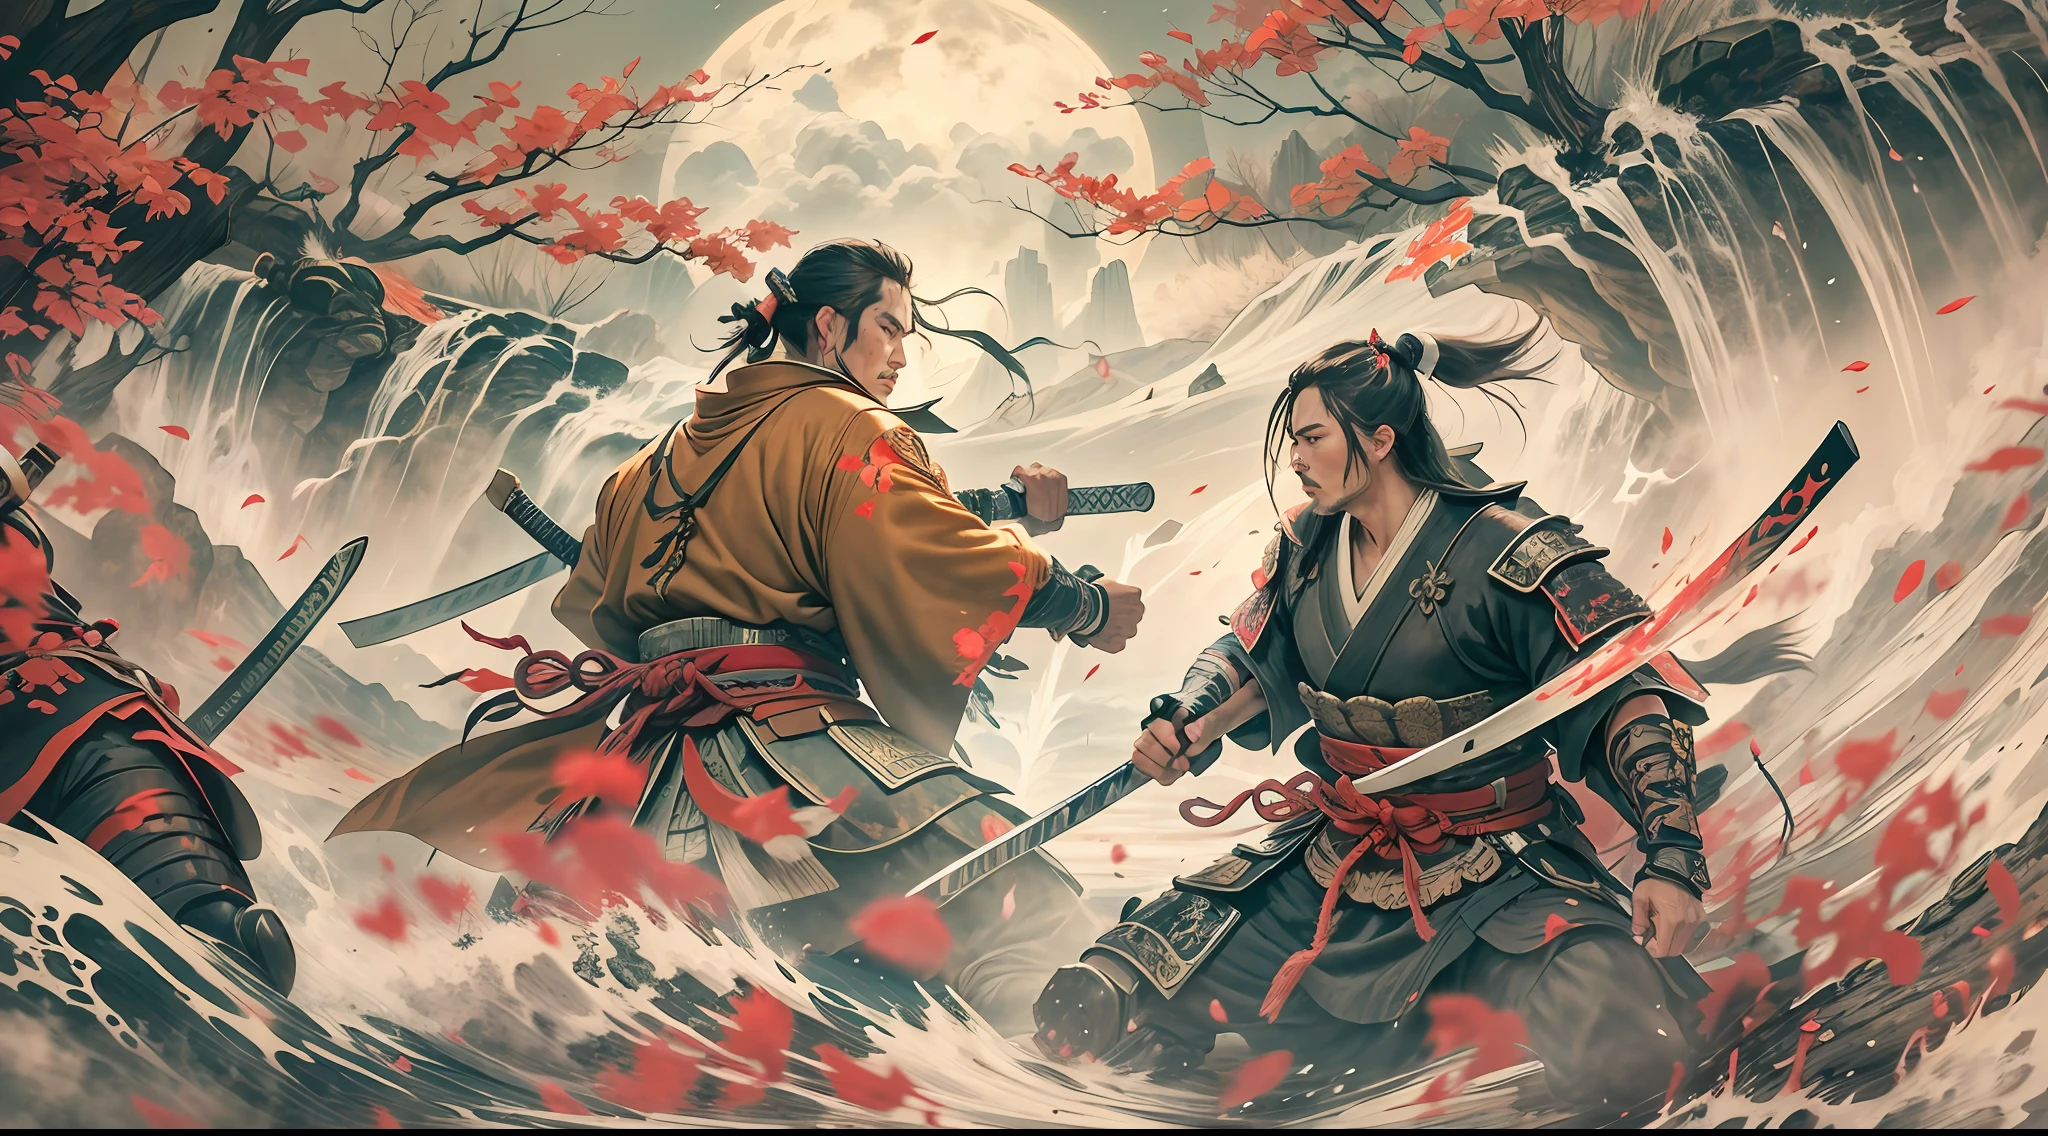 Lucha de dos samuráis luchando, con varias heridas en el cuerpo, en un hermoso, entorno impresionante